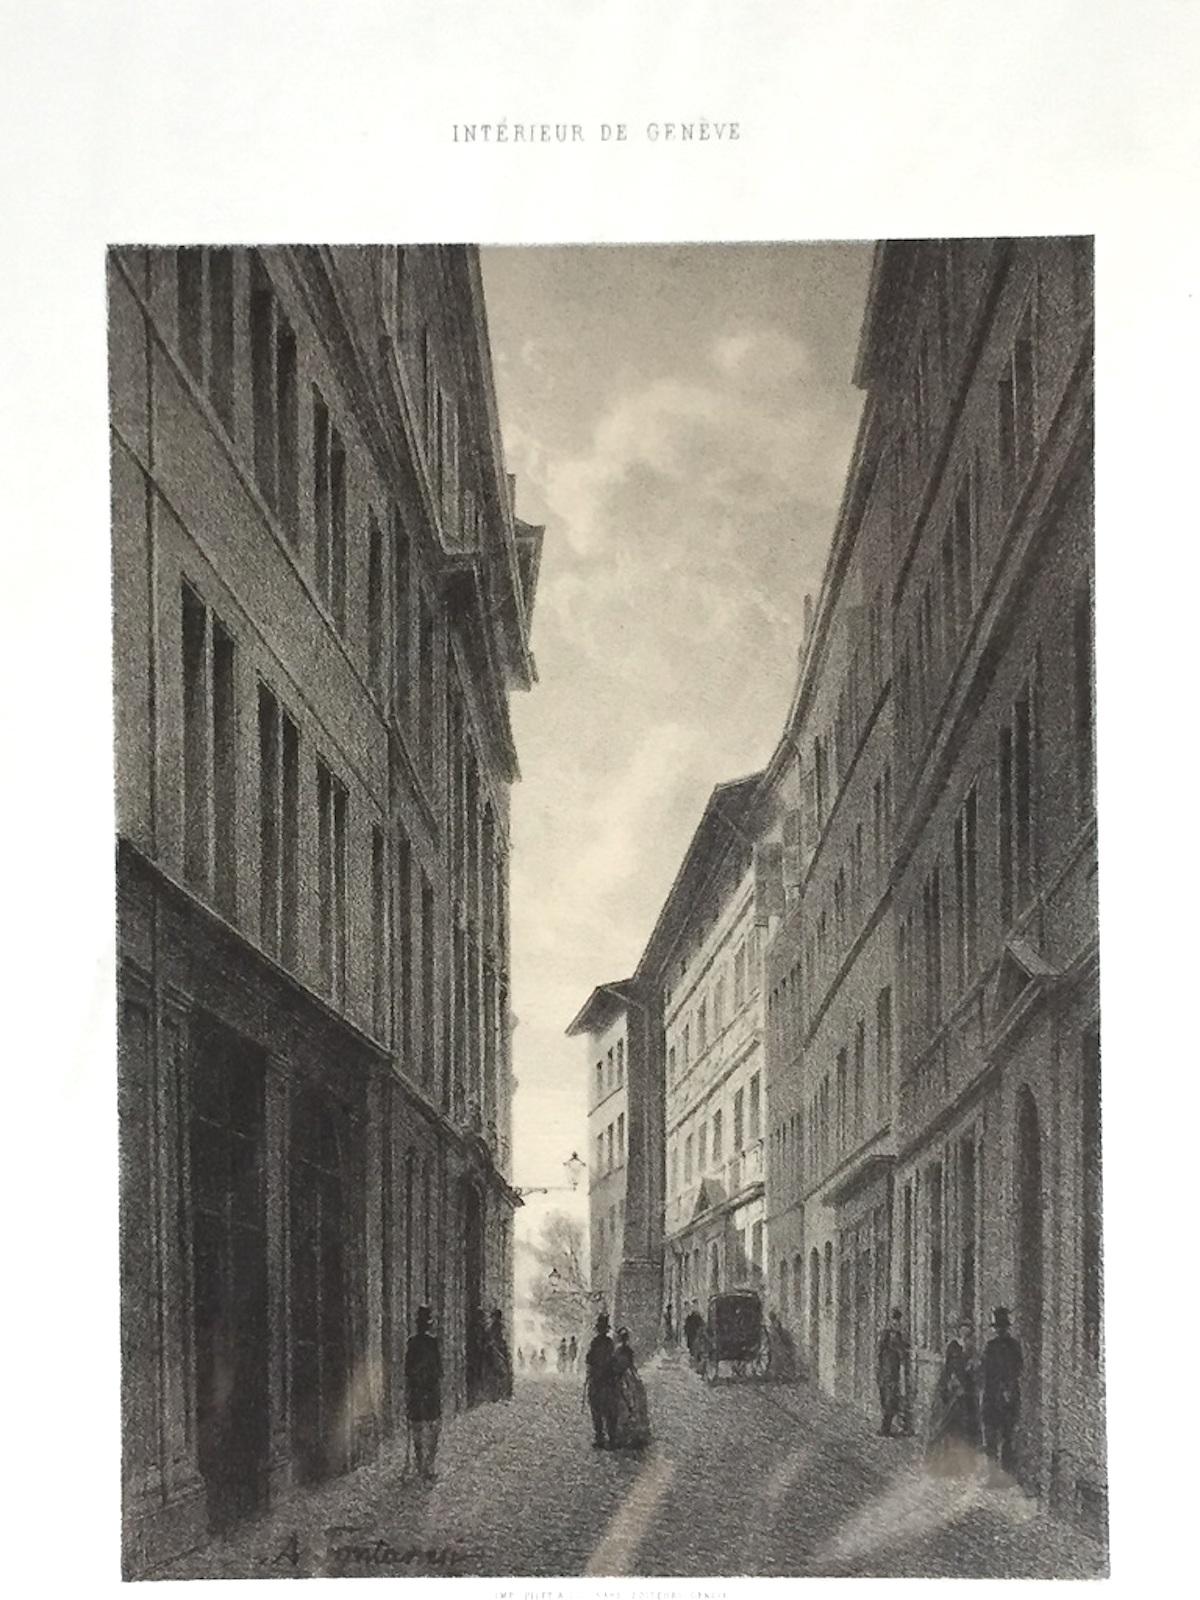 Interieur de Geneve. Rue de l'Hotel de Ville – Lithographie von A. Fontanesi, 1854